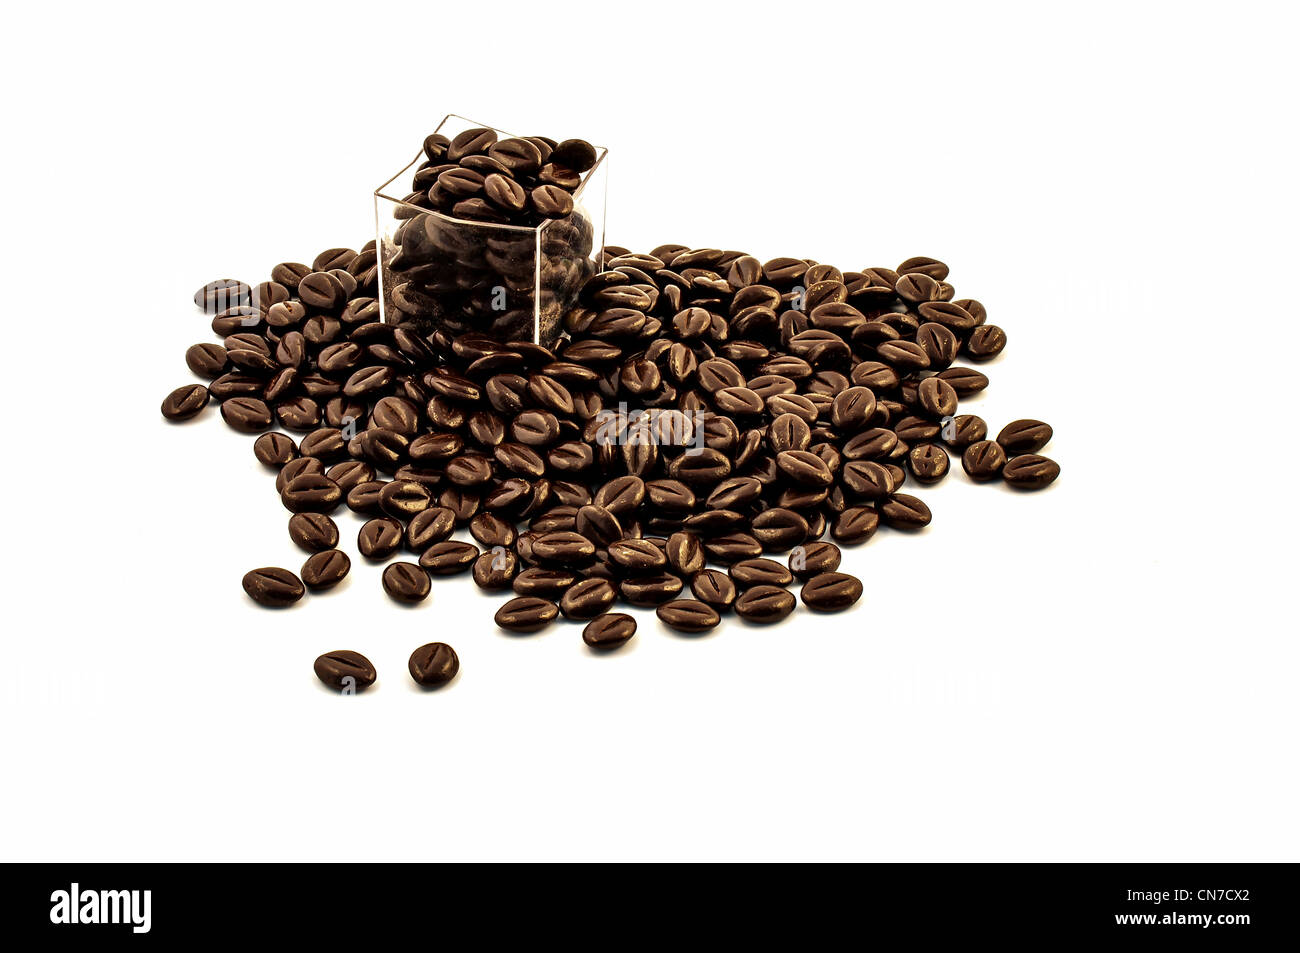 Groupe de grains de café au chocolat isolé sur fond blanc Banque D'Images